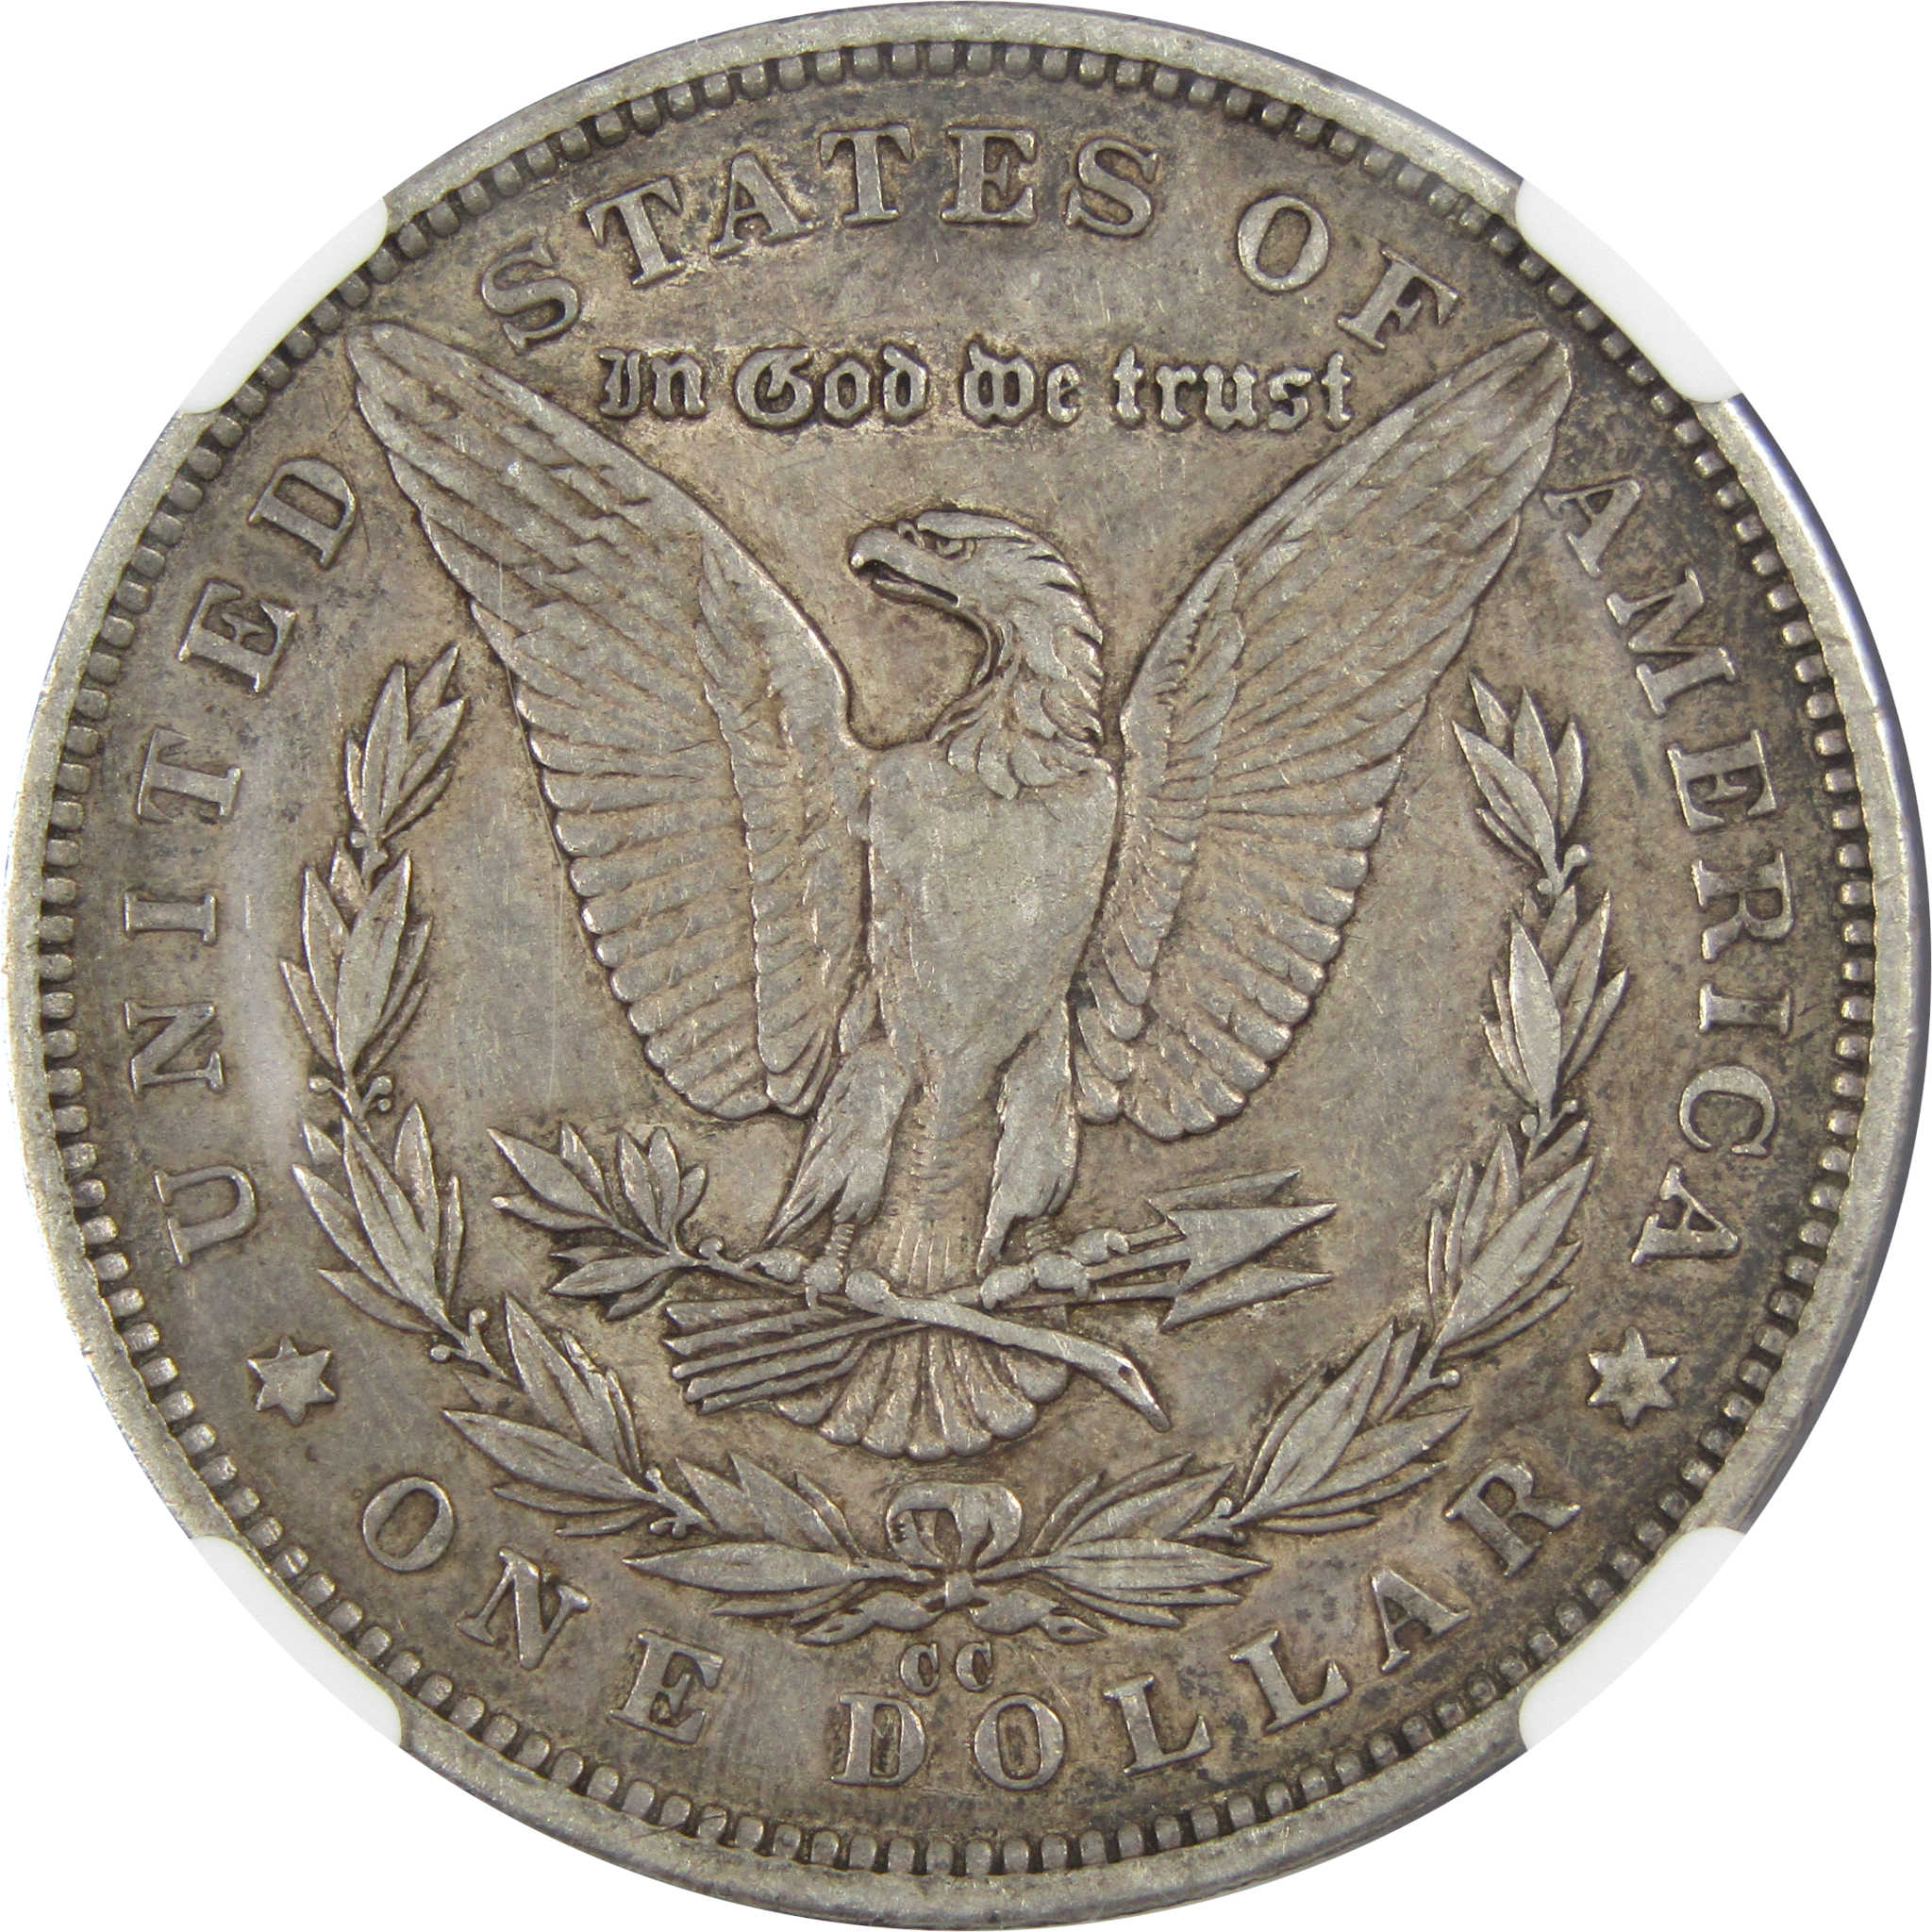 1892 CC Morgan Dollar XF 45 NGC 90% Silver $1 Coin SKU:I7100 - Morgan coin - Morgan silver dollar - Morgan silver dollar for sale - Profile Coins &amp; Collectibles